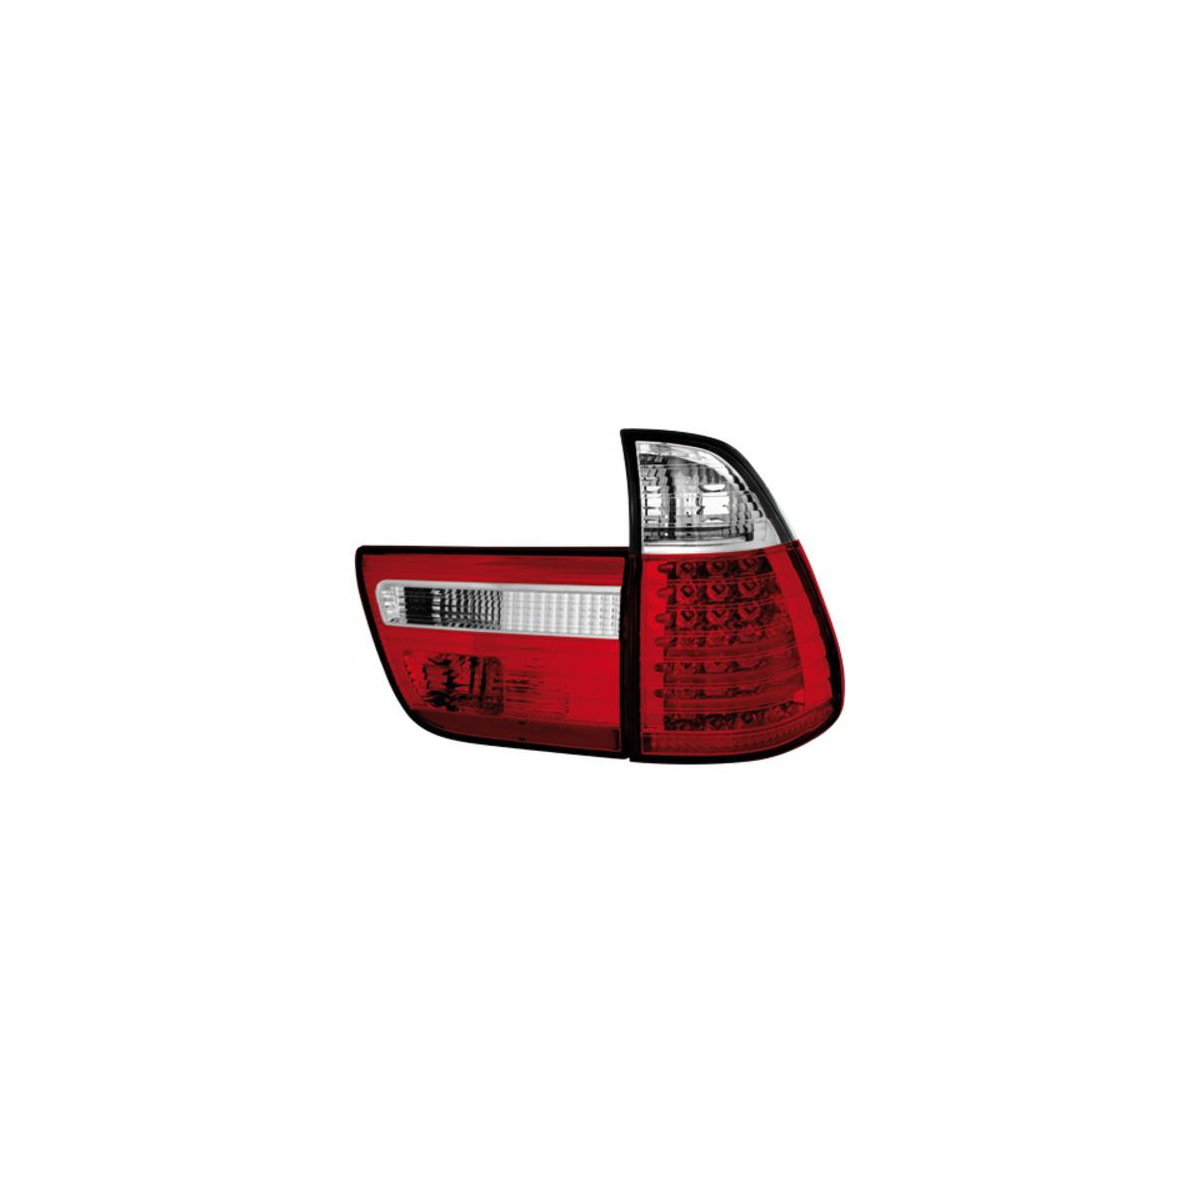 LAMPY TYLNE DIODOWE BMW X5 E53 8/99-10/03 RED WHITE